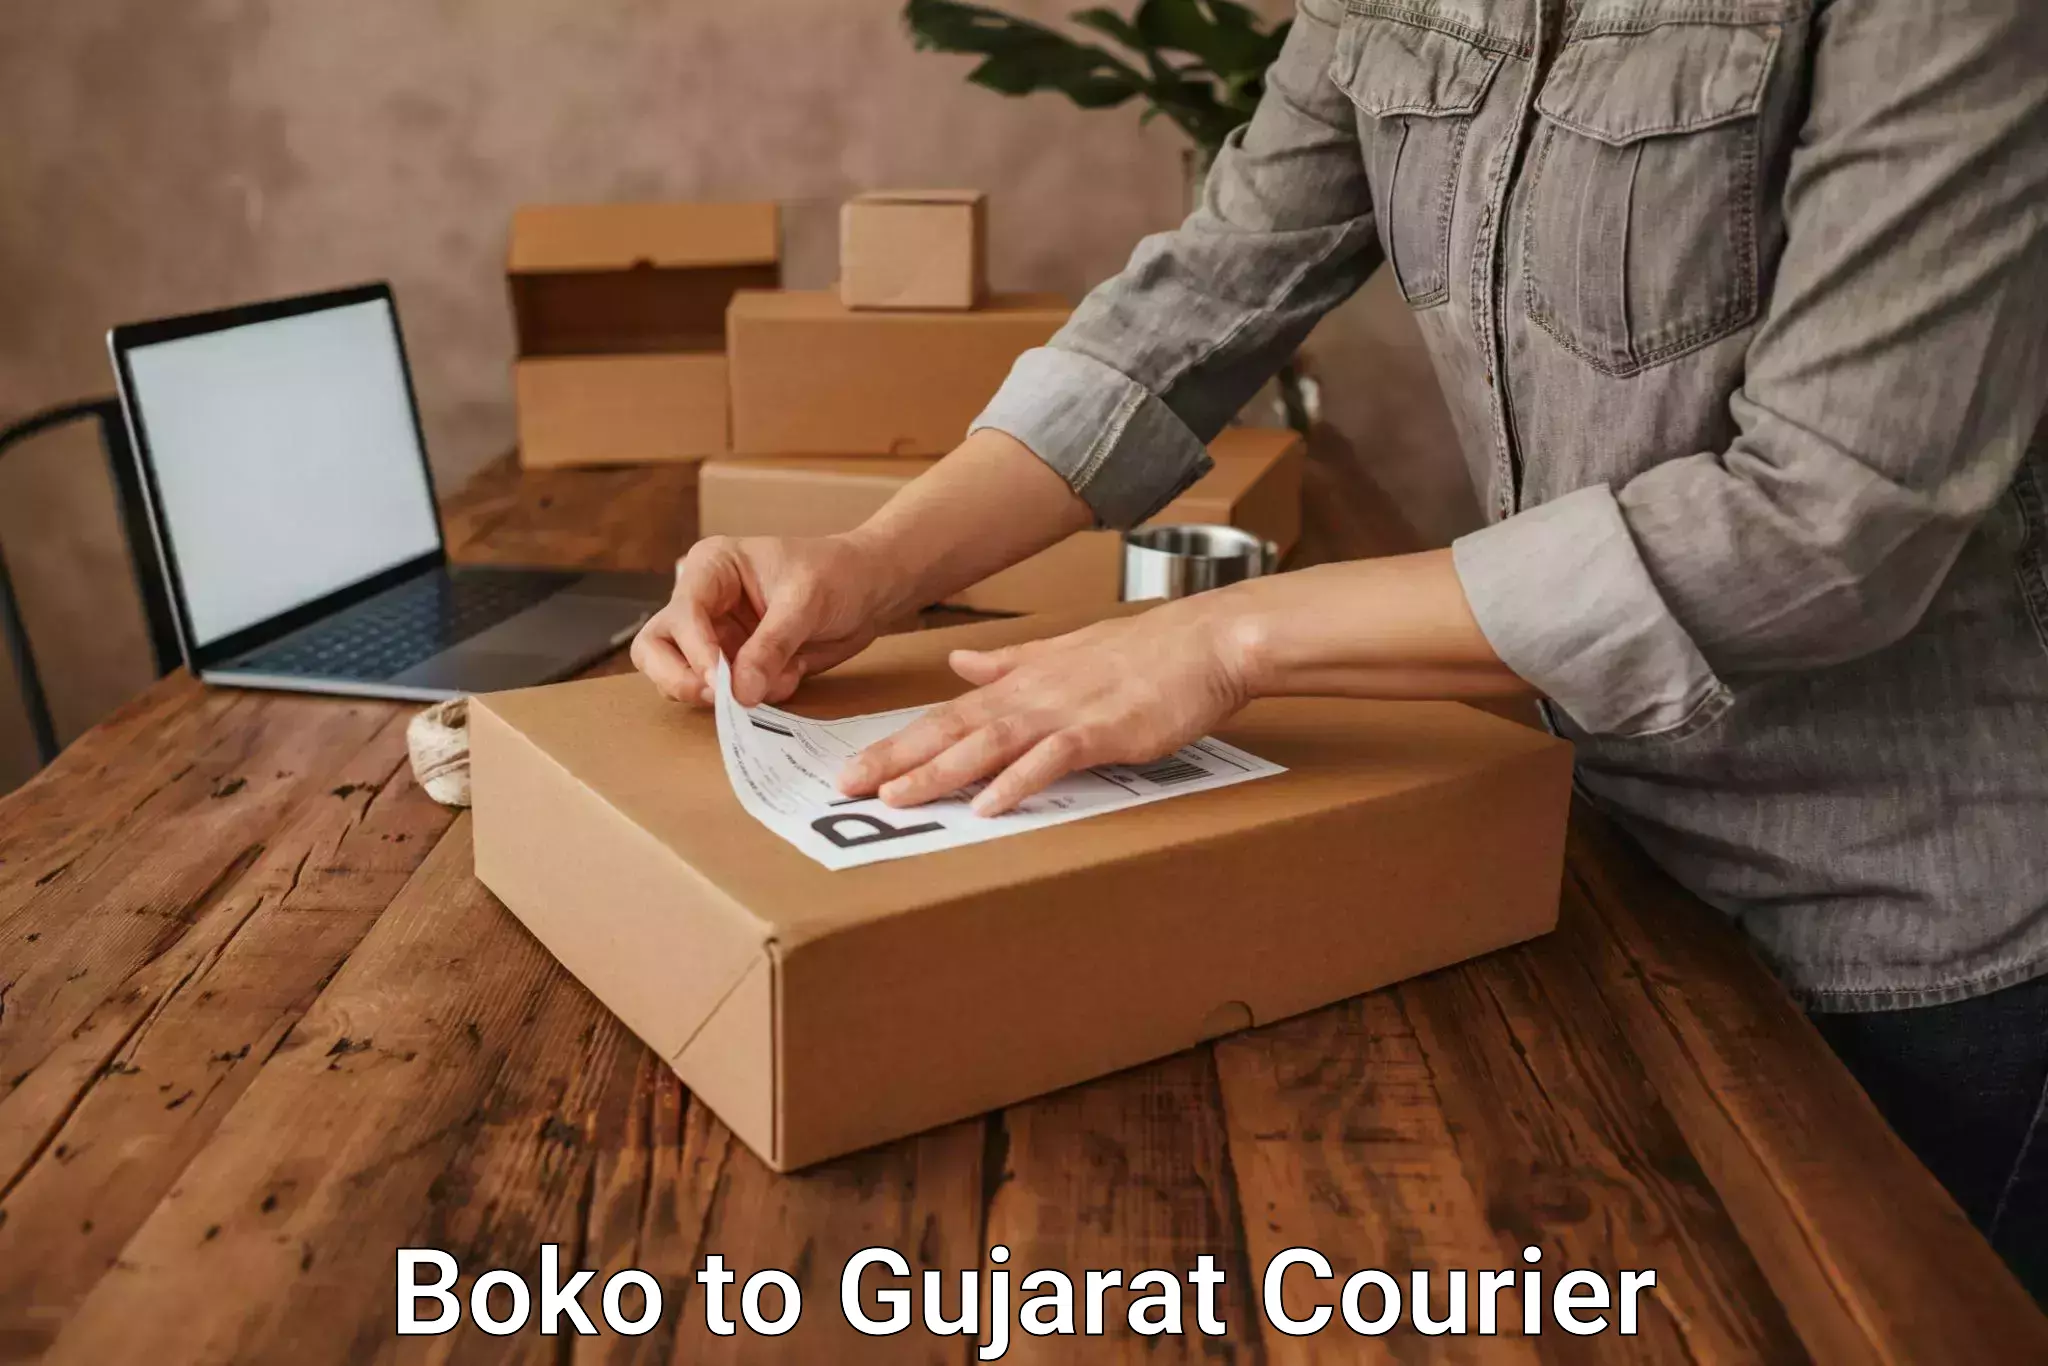 Cost-effective courier options Boko to IIIT Surat